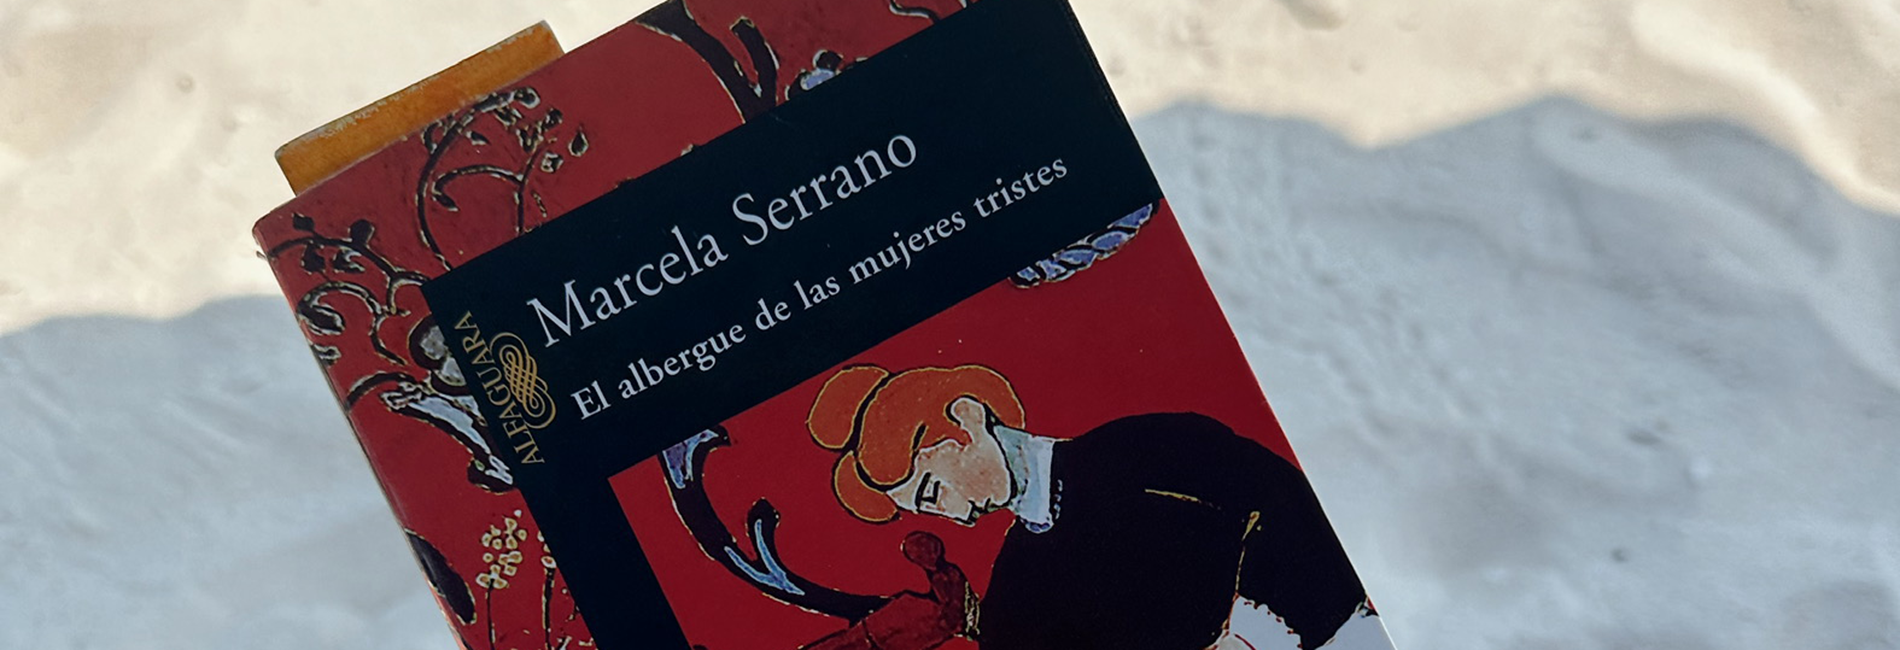 El albergue de las mujeres tristes de Marcela Serrano (lecciones que aprendí)